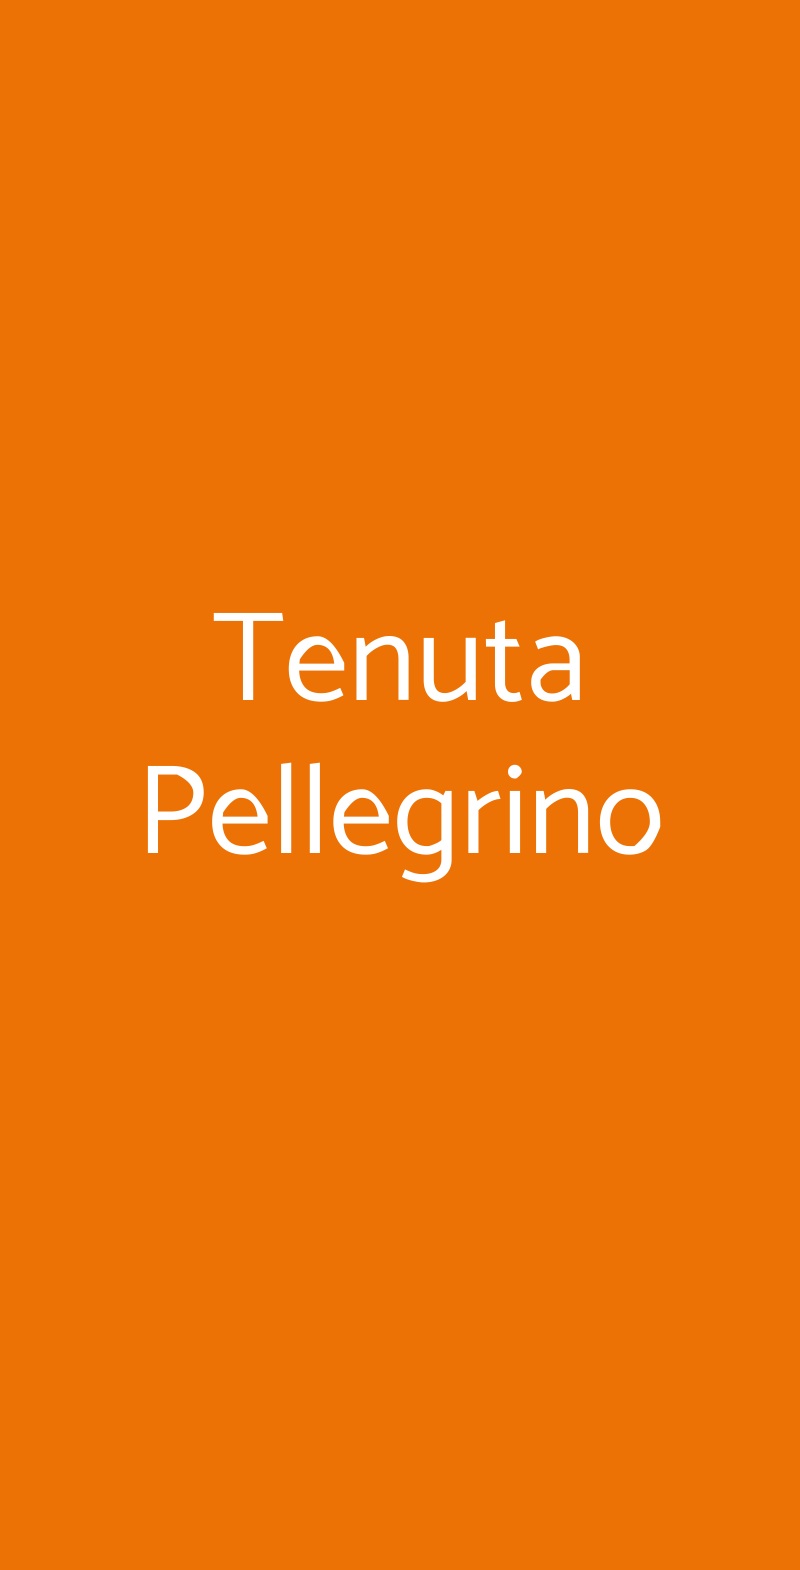 Tenuta Pellegrino Sogliano Cavour menù 1 pagina